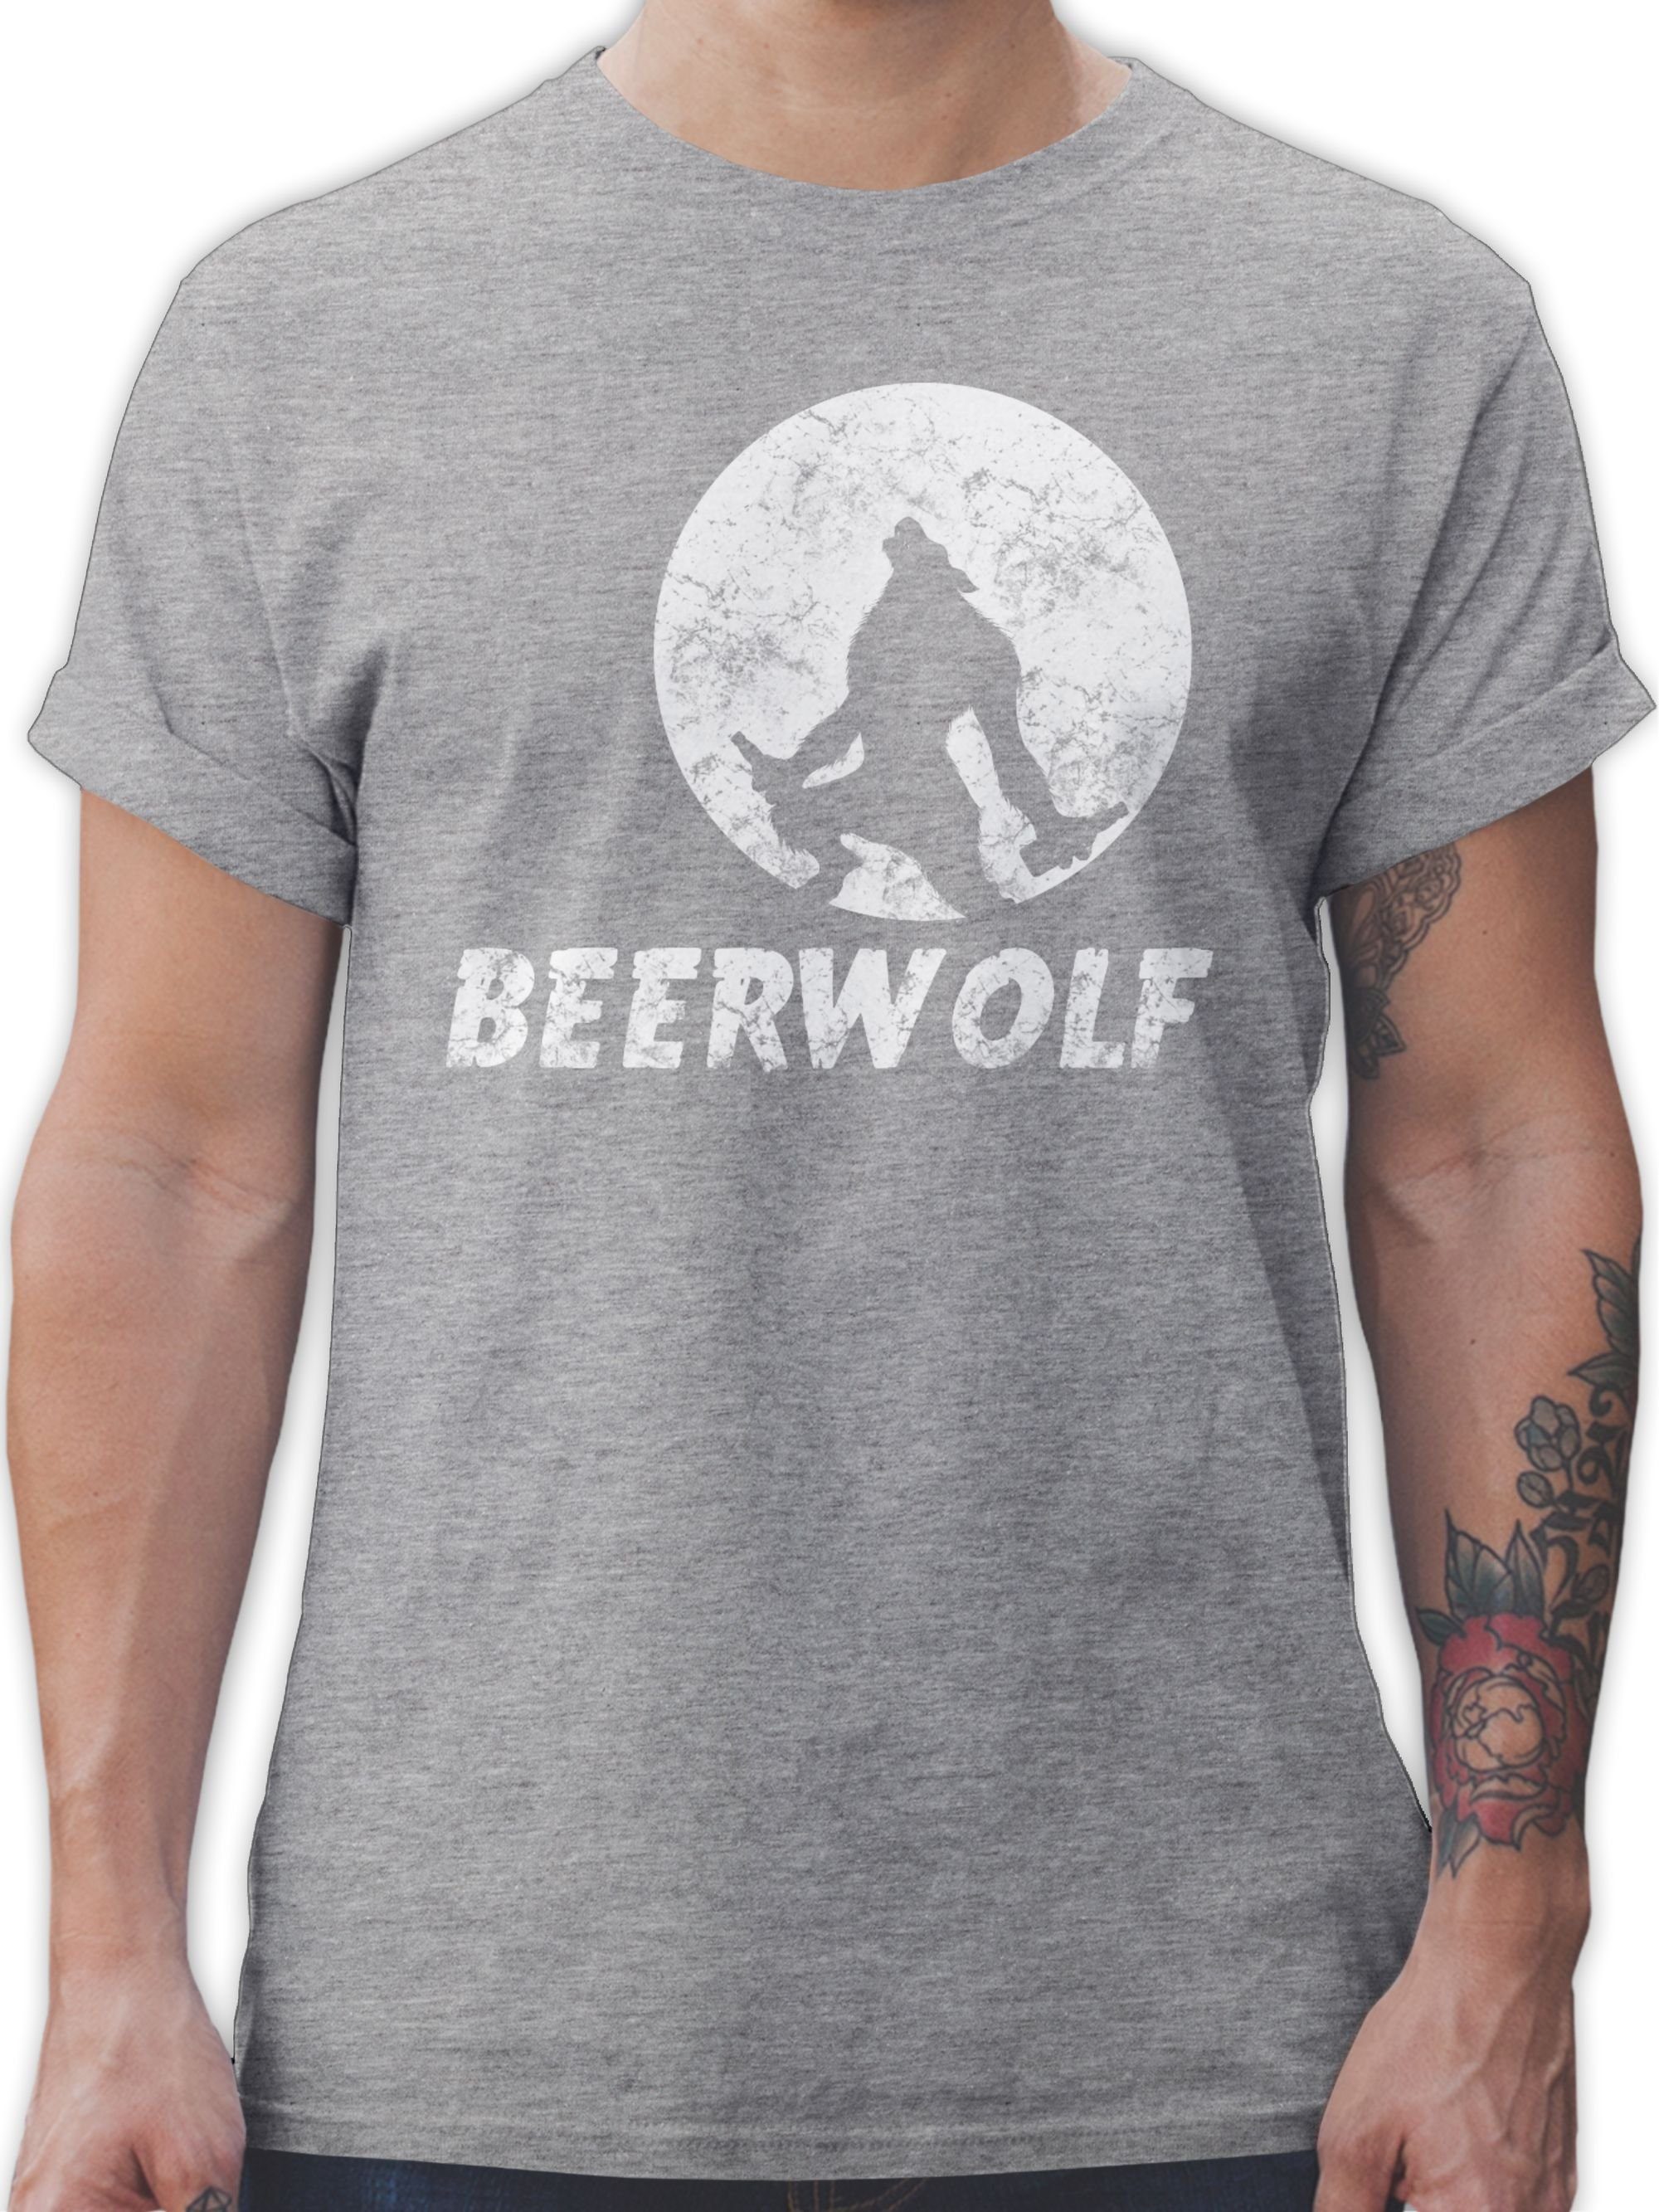 Shirtracer T-Shirt Beerwolf Sprüche Statement 3 meliert Grau